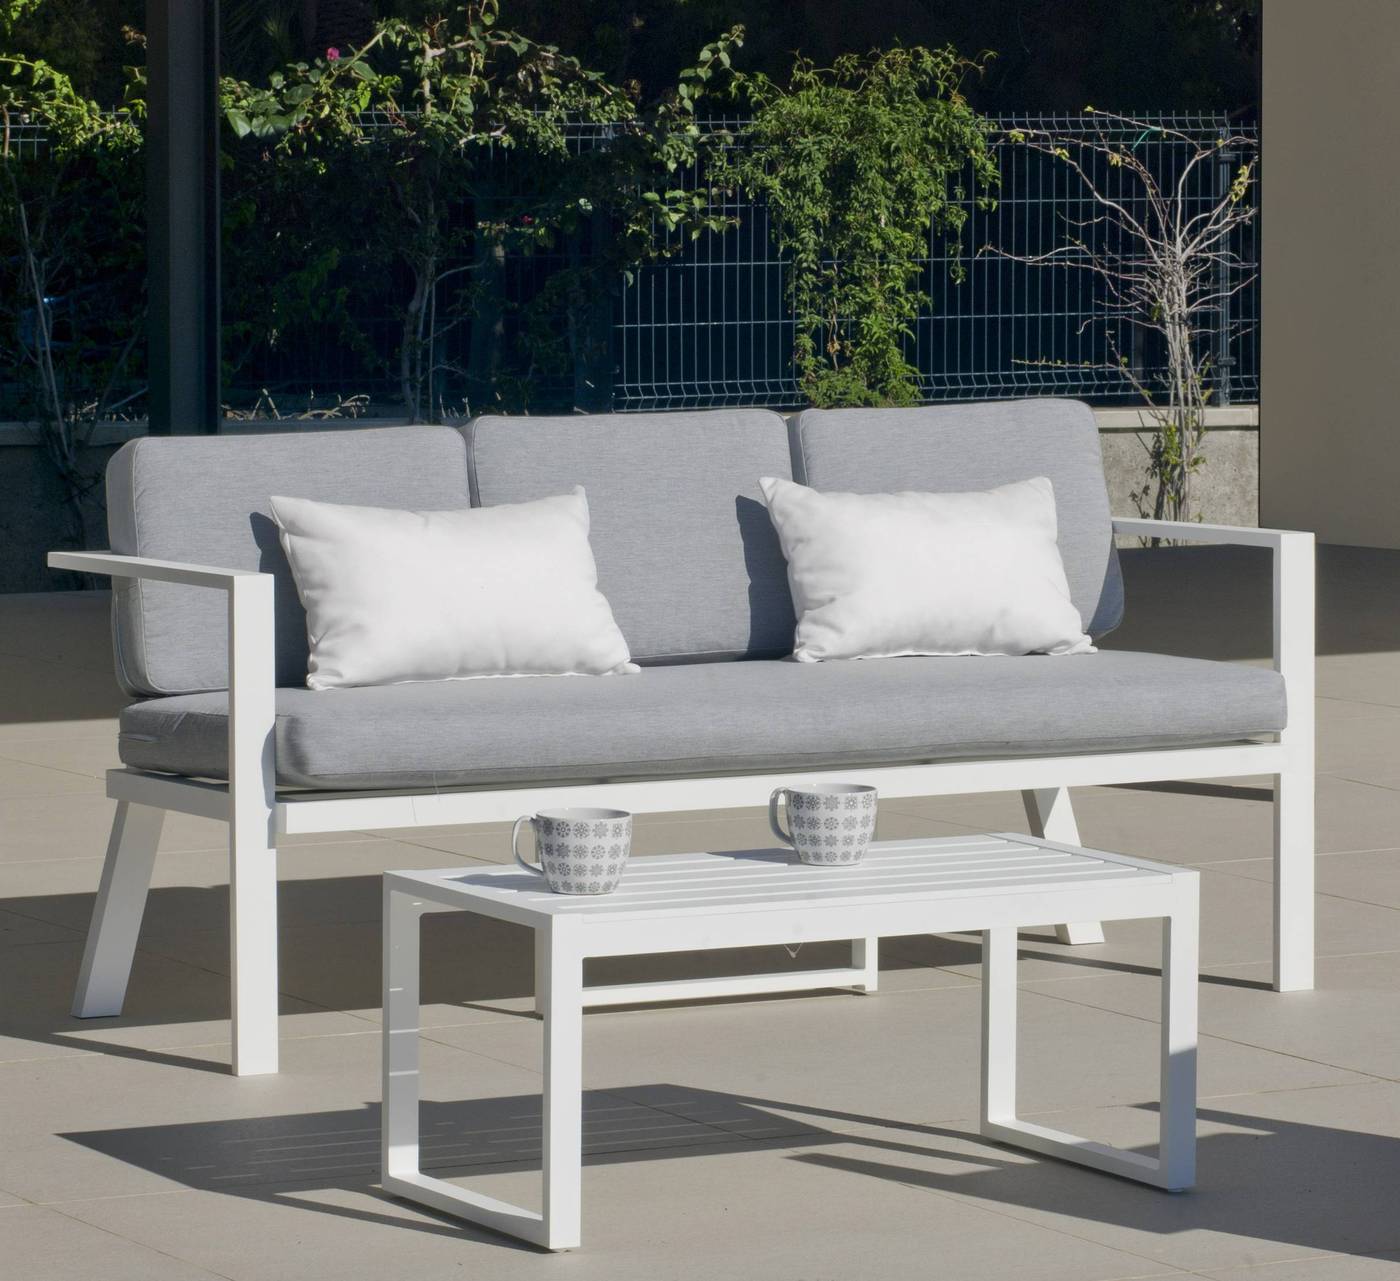 Conjunto Aluminio Luxe Azores-8 - Conjunto de aluminio luxe: 1 sofá de 3 plazas + 2 sillones + 1 mesa de centro + cojines. Disponible en color blanco y antracita.